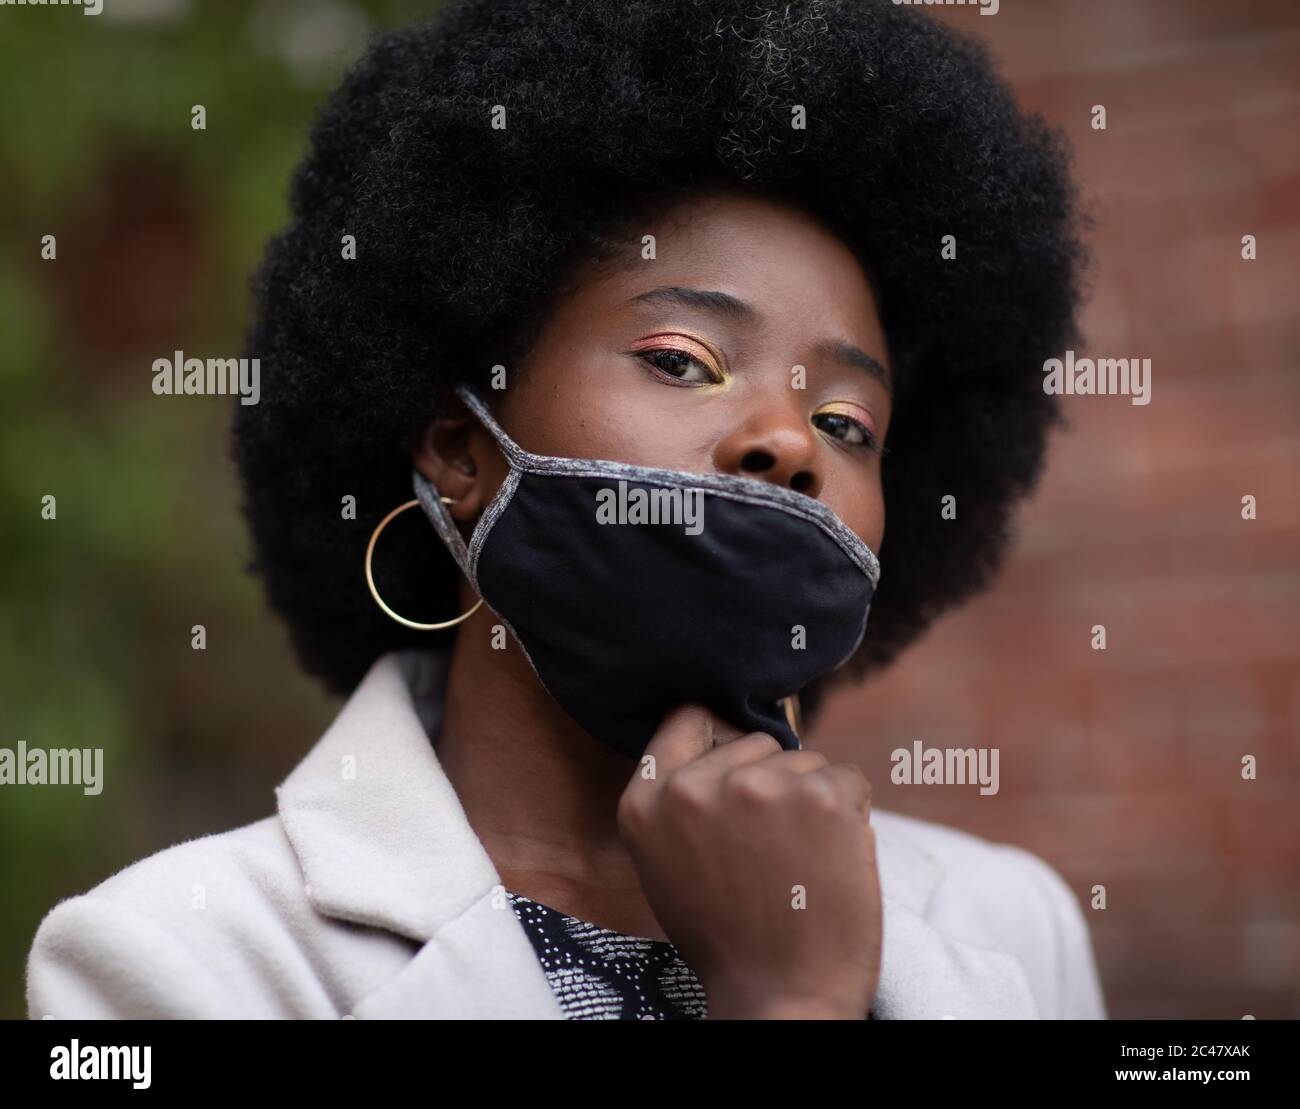 Schwarze selbstbewusste Frau, die ihre Gesichtsmaske herunterzieht. Gesichtsbedeckung ist während der COVID-19-Pandemie obligatorisch in der Öffentlichkeit zu tragen. Stockfoto